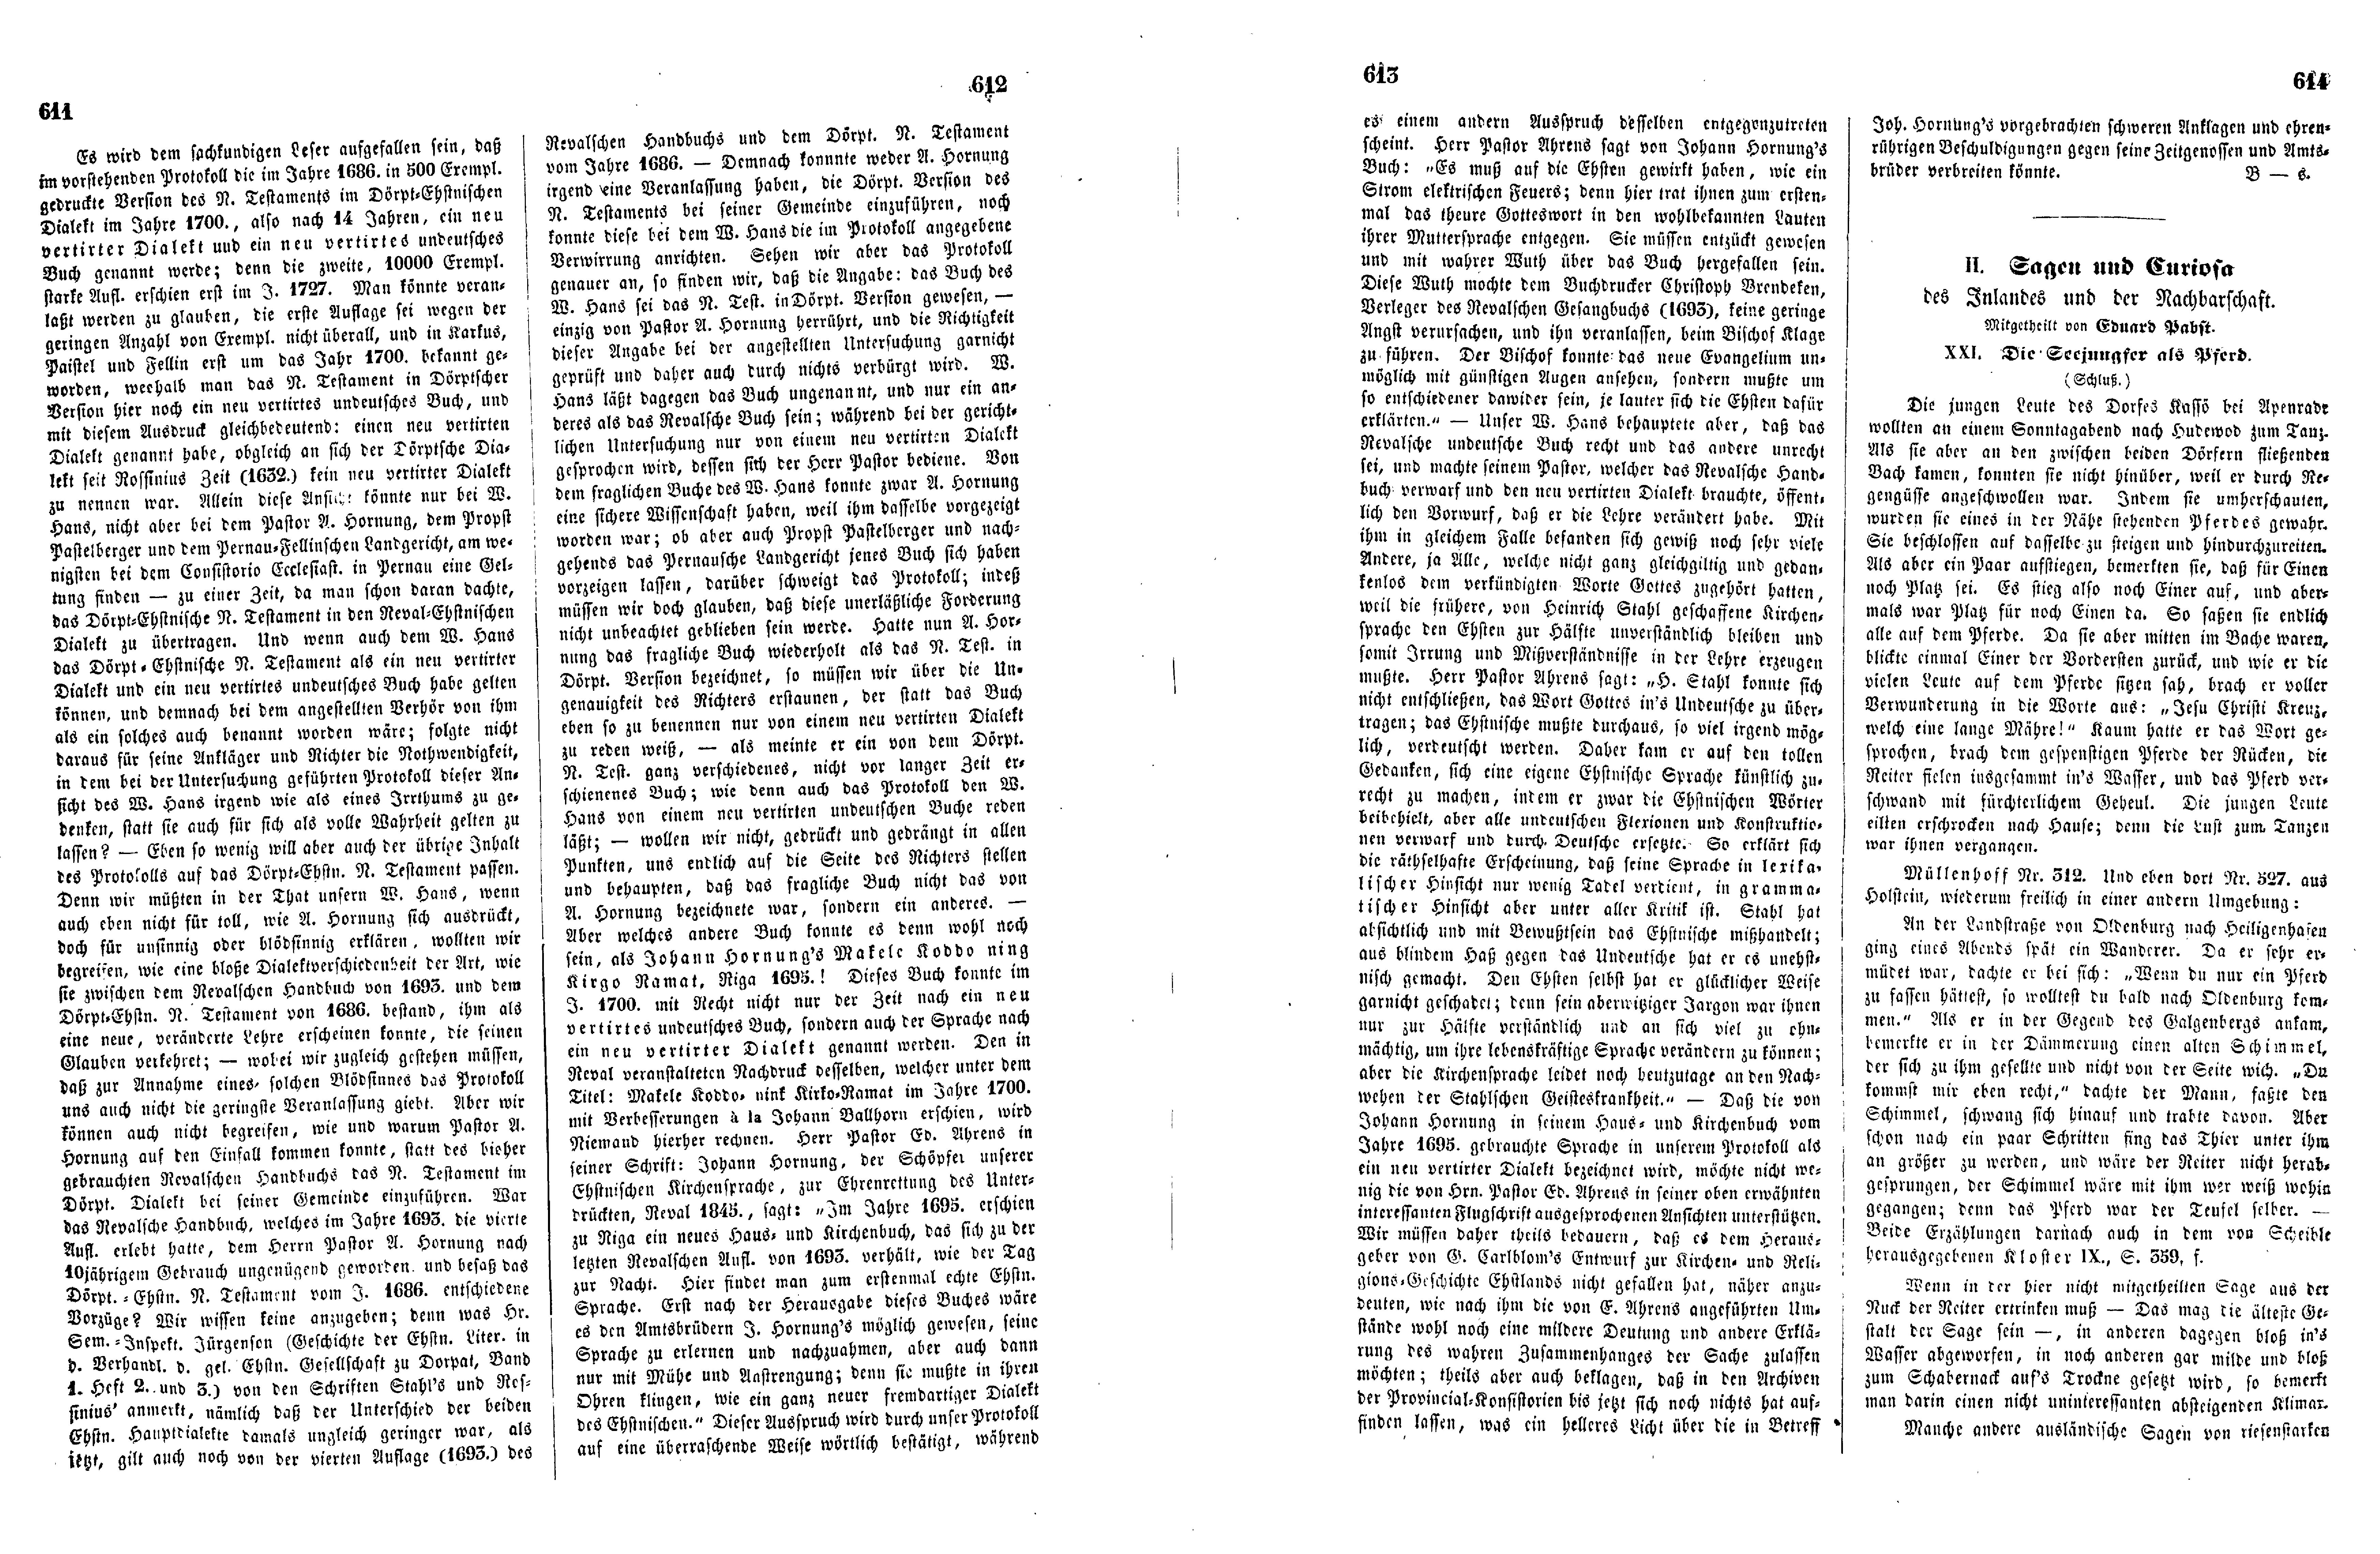 Das Inland [17] (1852) | 158. (611-614) Haupttext